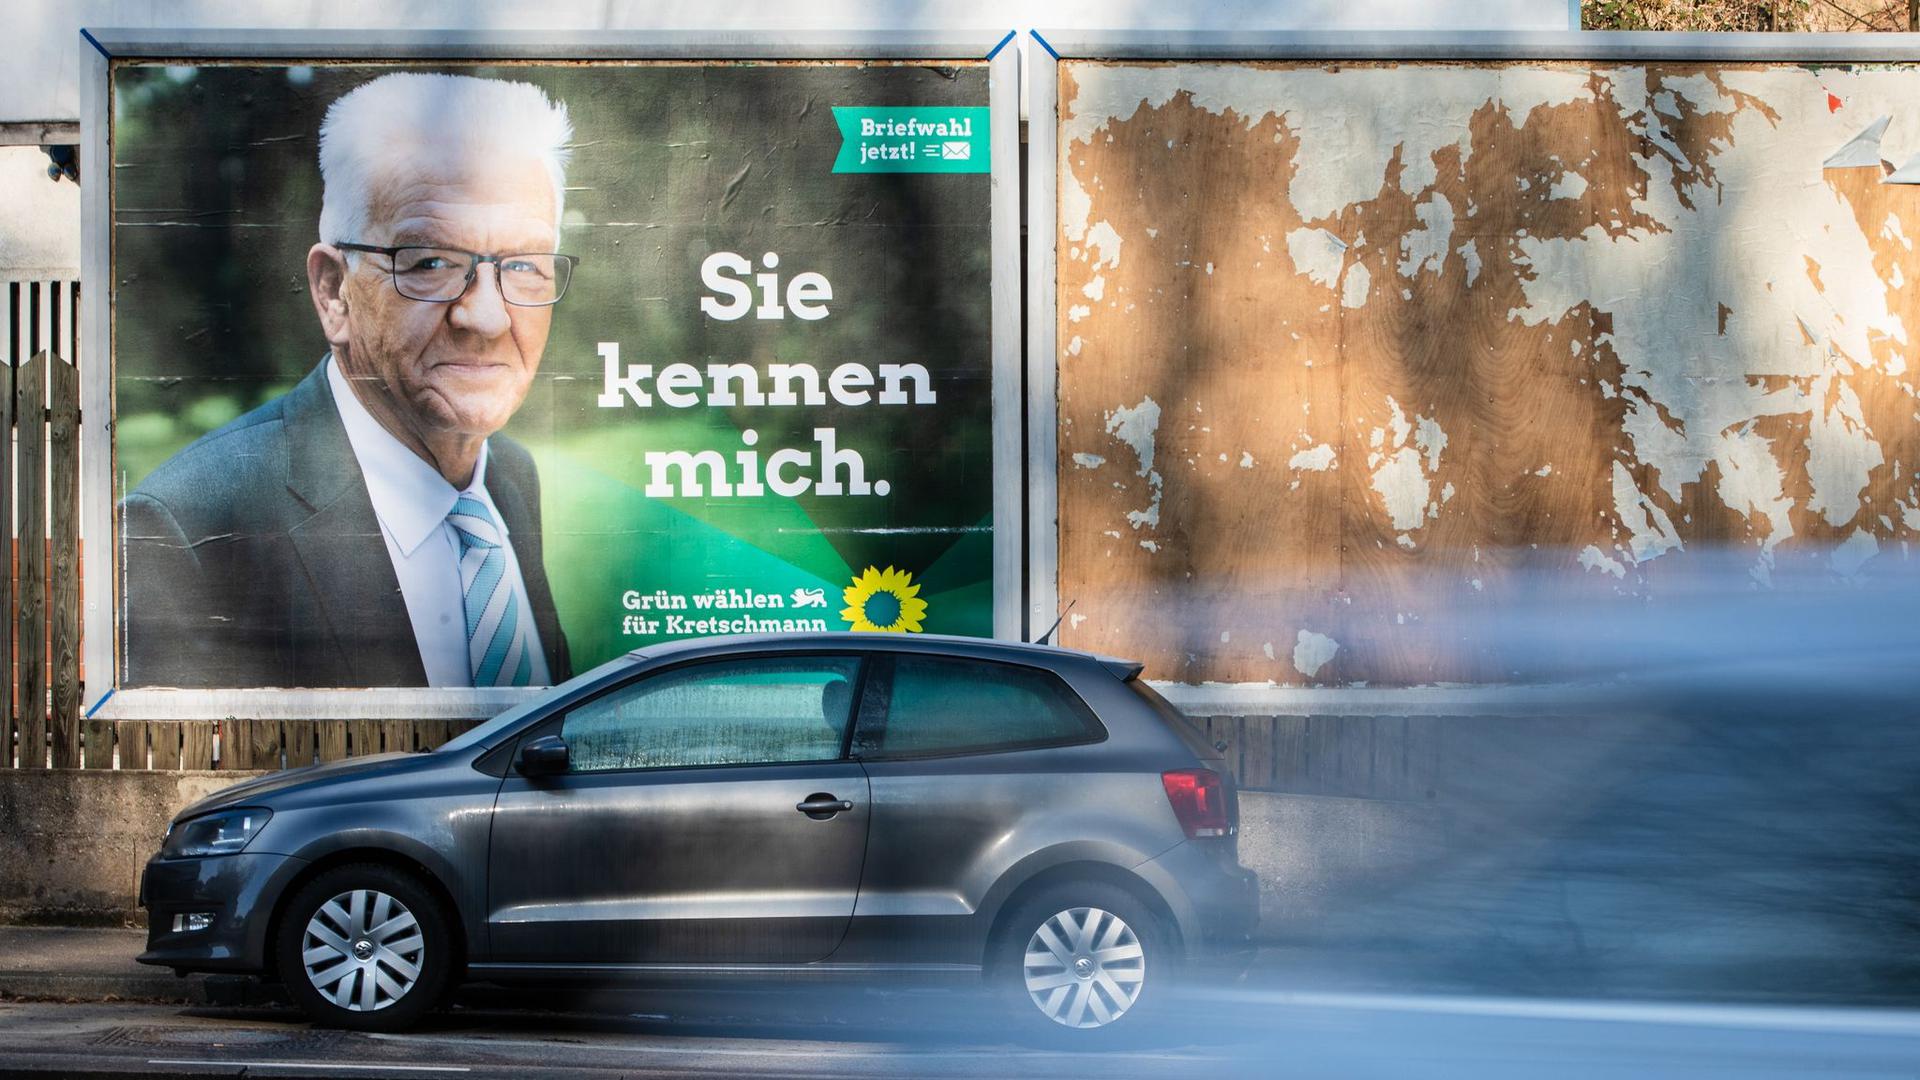 „Sie kennen mich“ steht auf einem Winfried-Kretschmann-Wahlplakat für die Landtagswahl geschrieben.